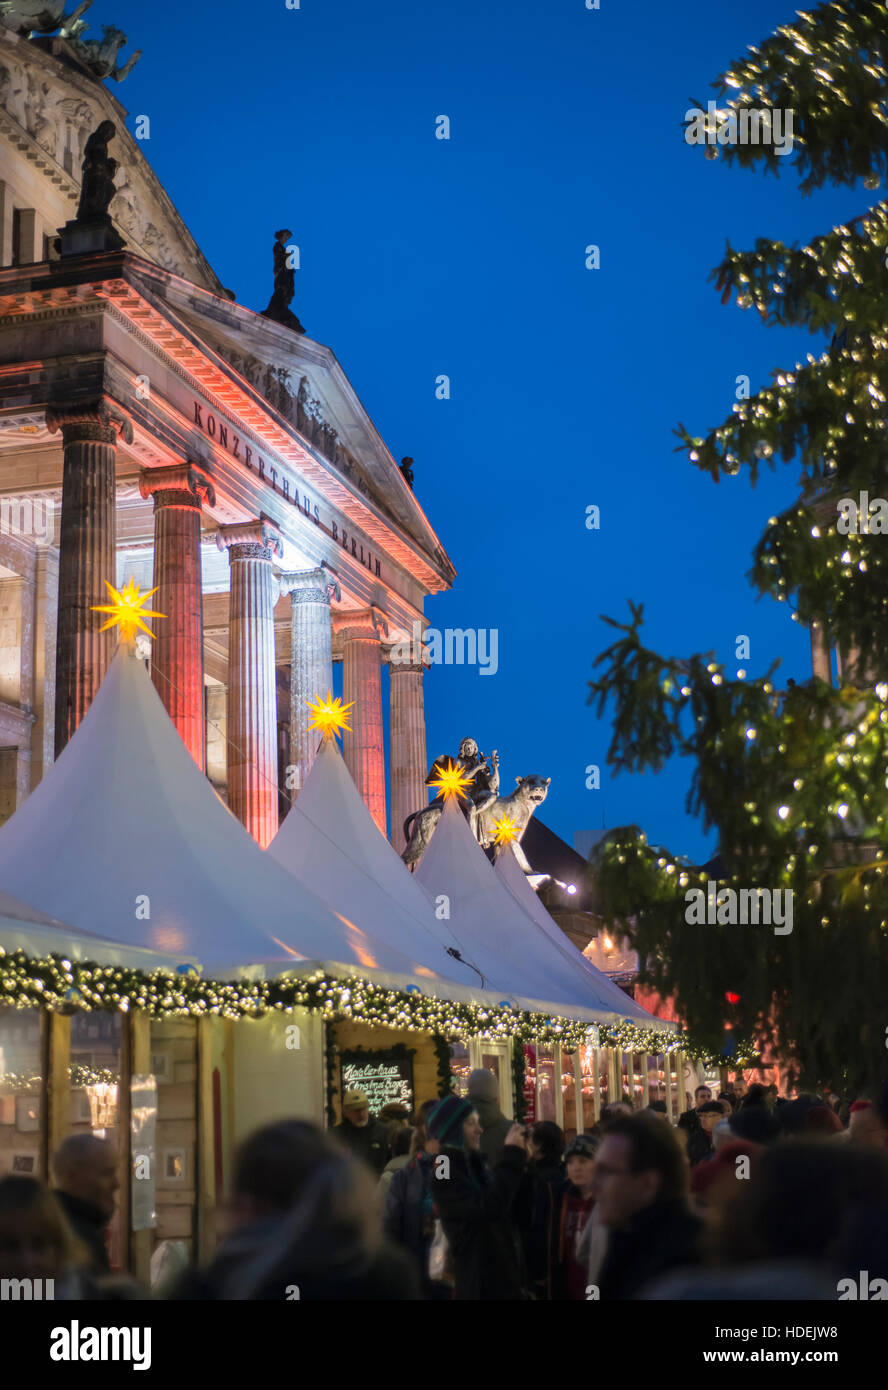 Der Weihnachtsmarkt auf dem Gendarmenmarkt in Berlin, Deutschland Stockfoto